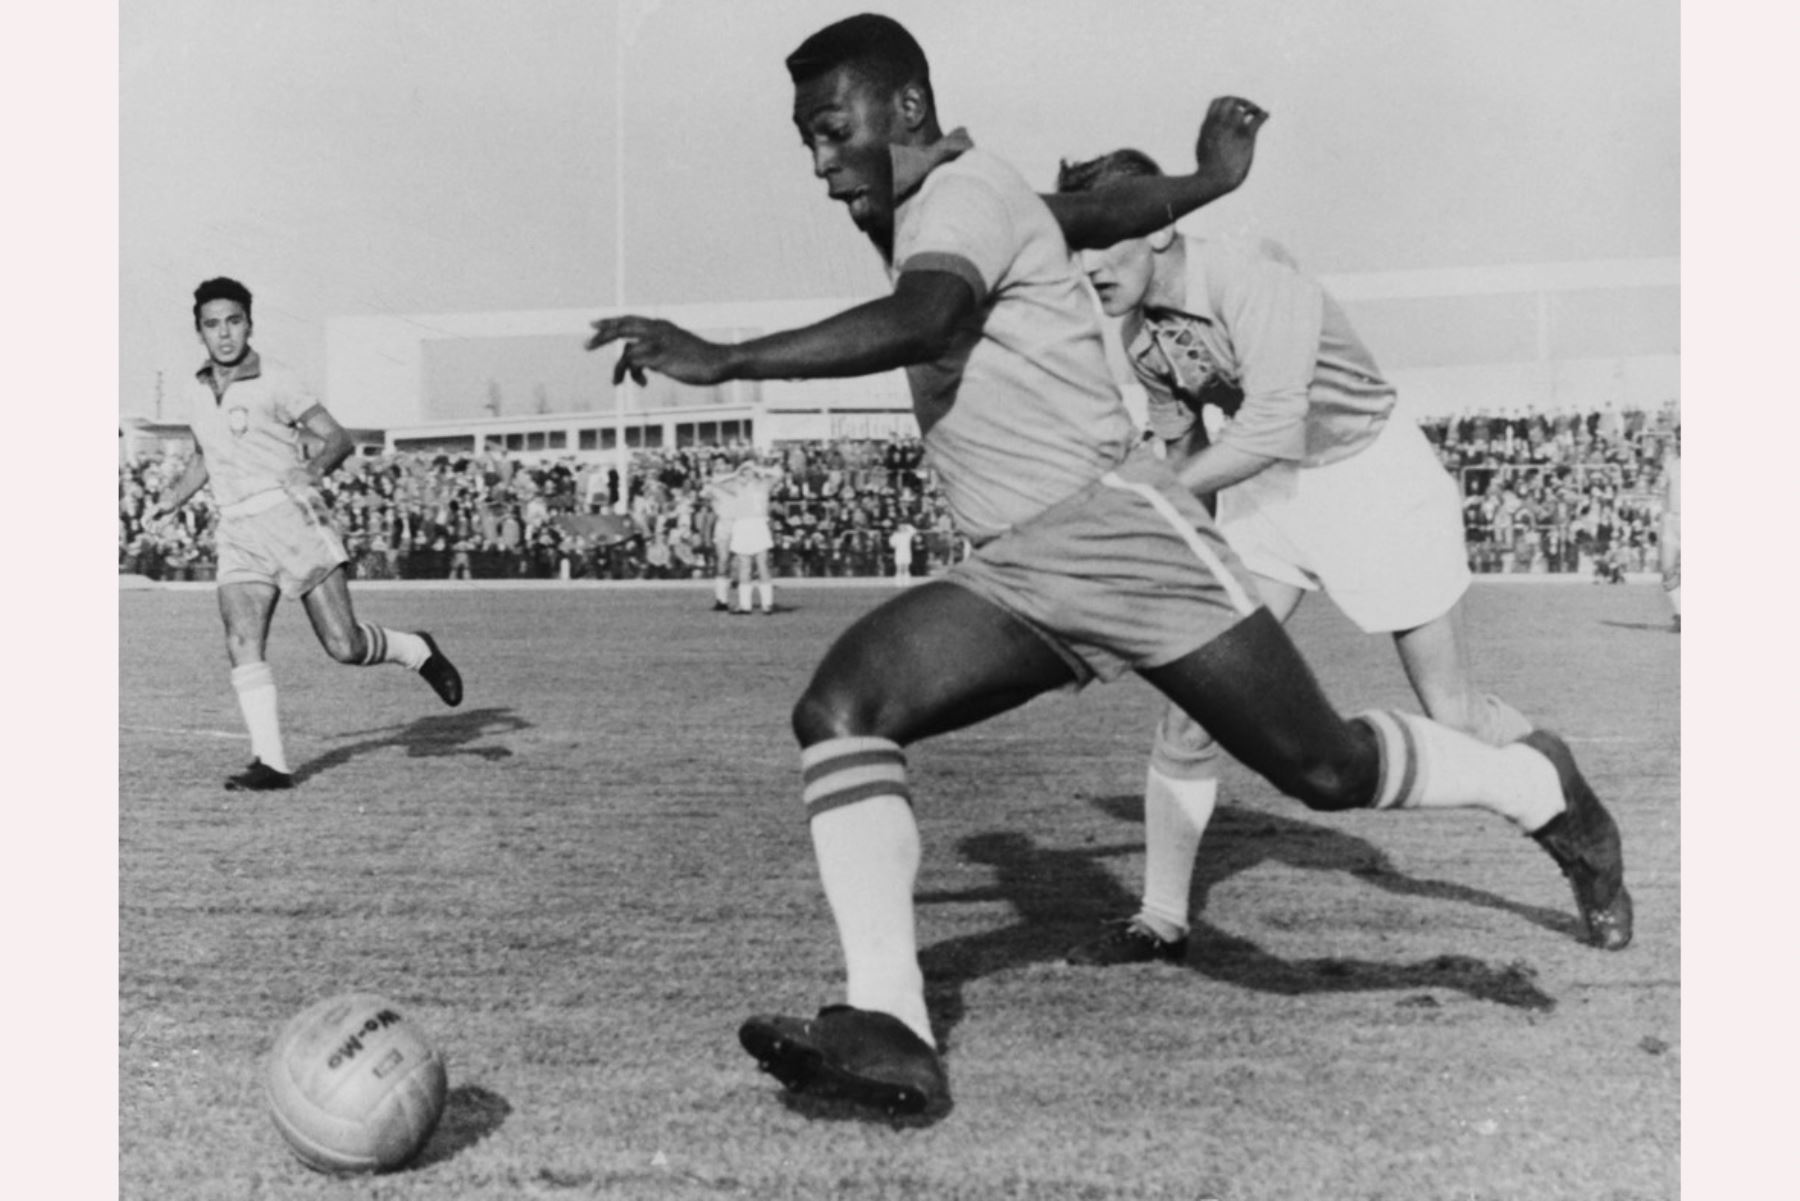 El delantero brasileño Pelé regatea a un defensor durante un partido amistoso entre Malmoe y Brasil, el 8 de mayo de 1960 en Malmoe

Foto:AFP